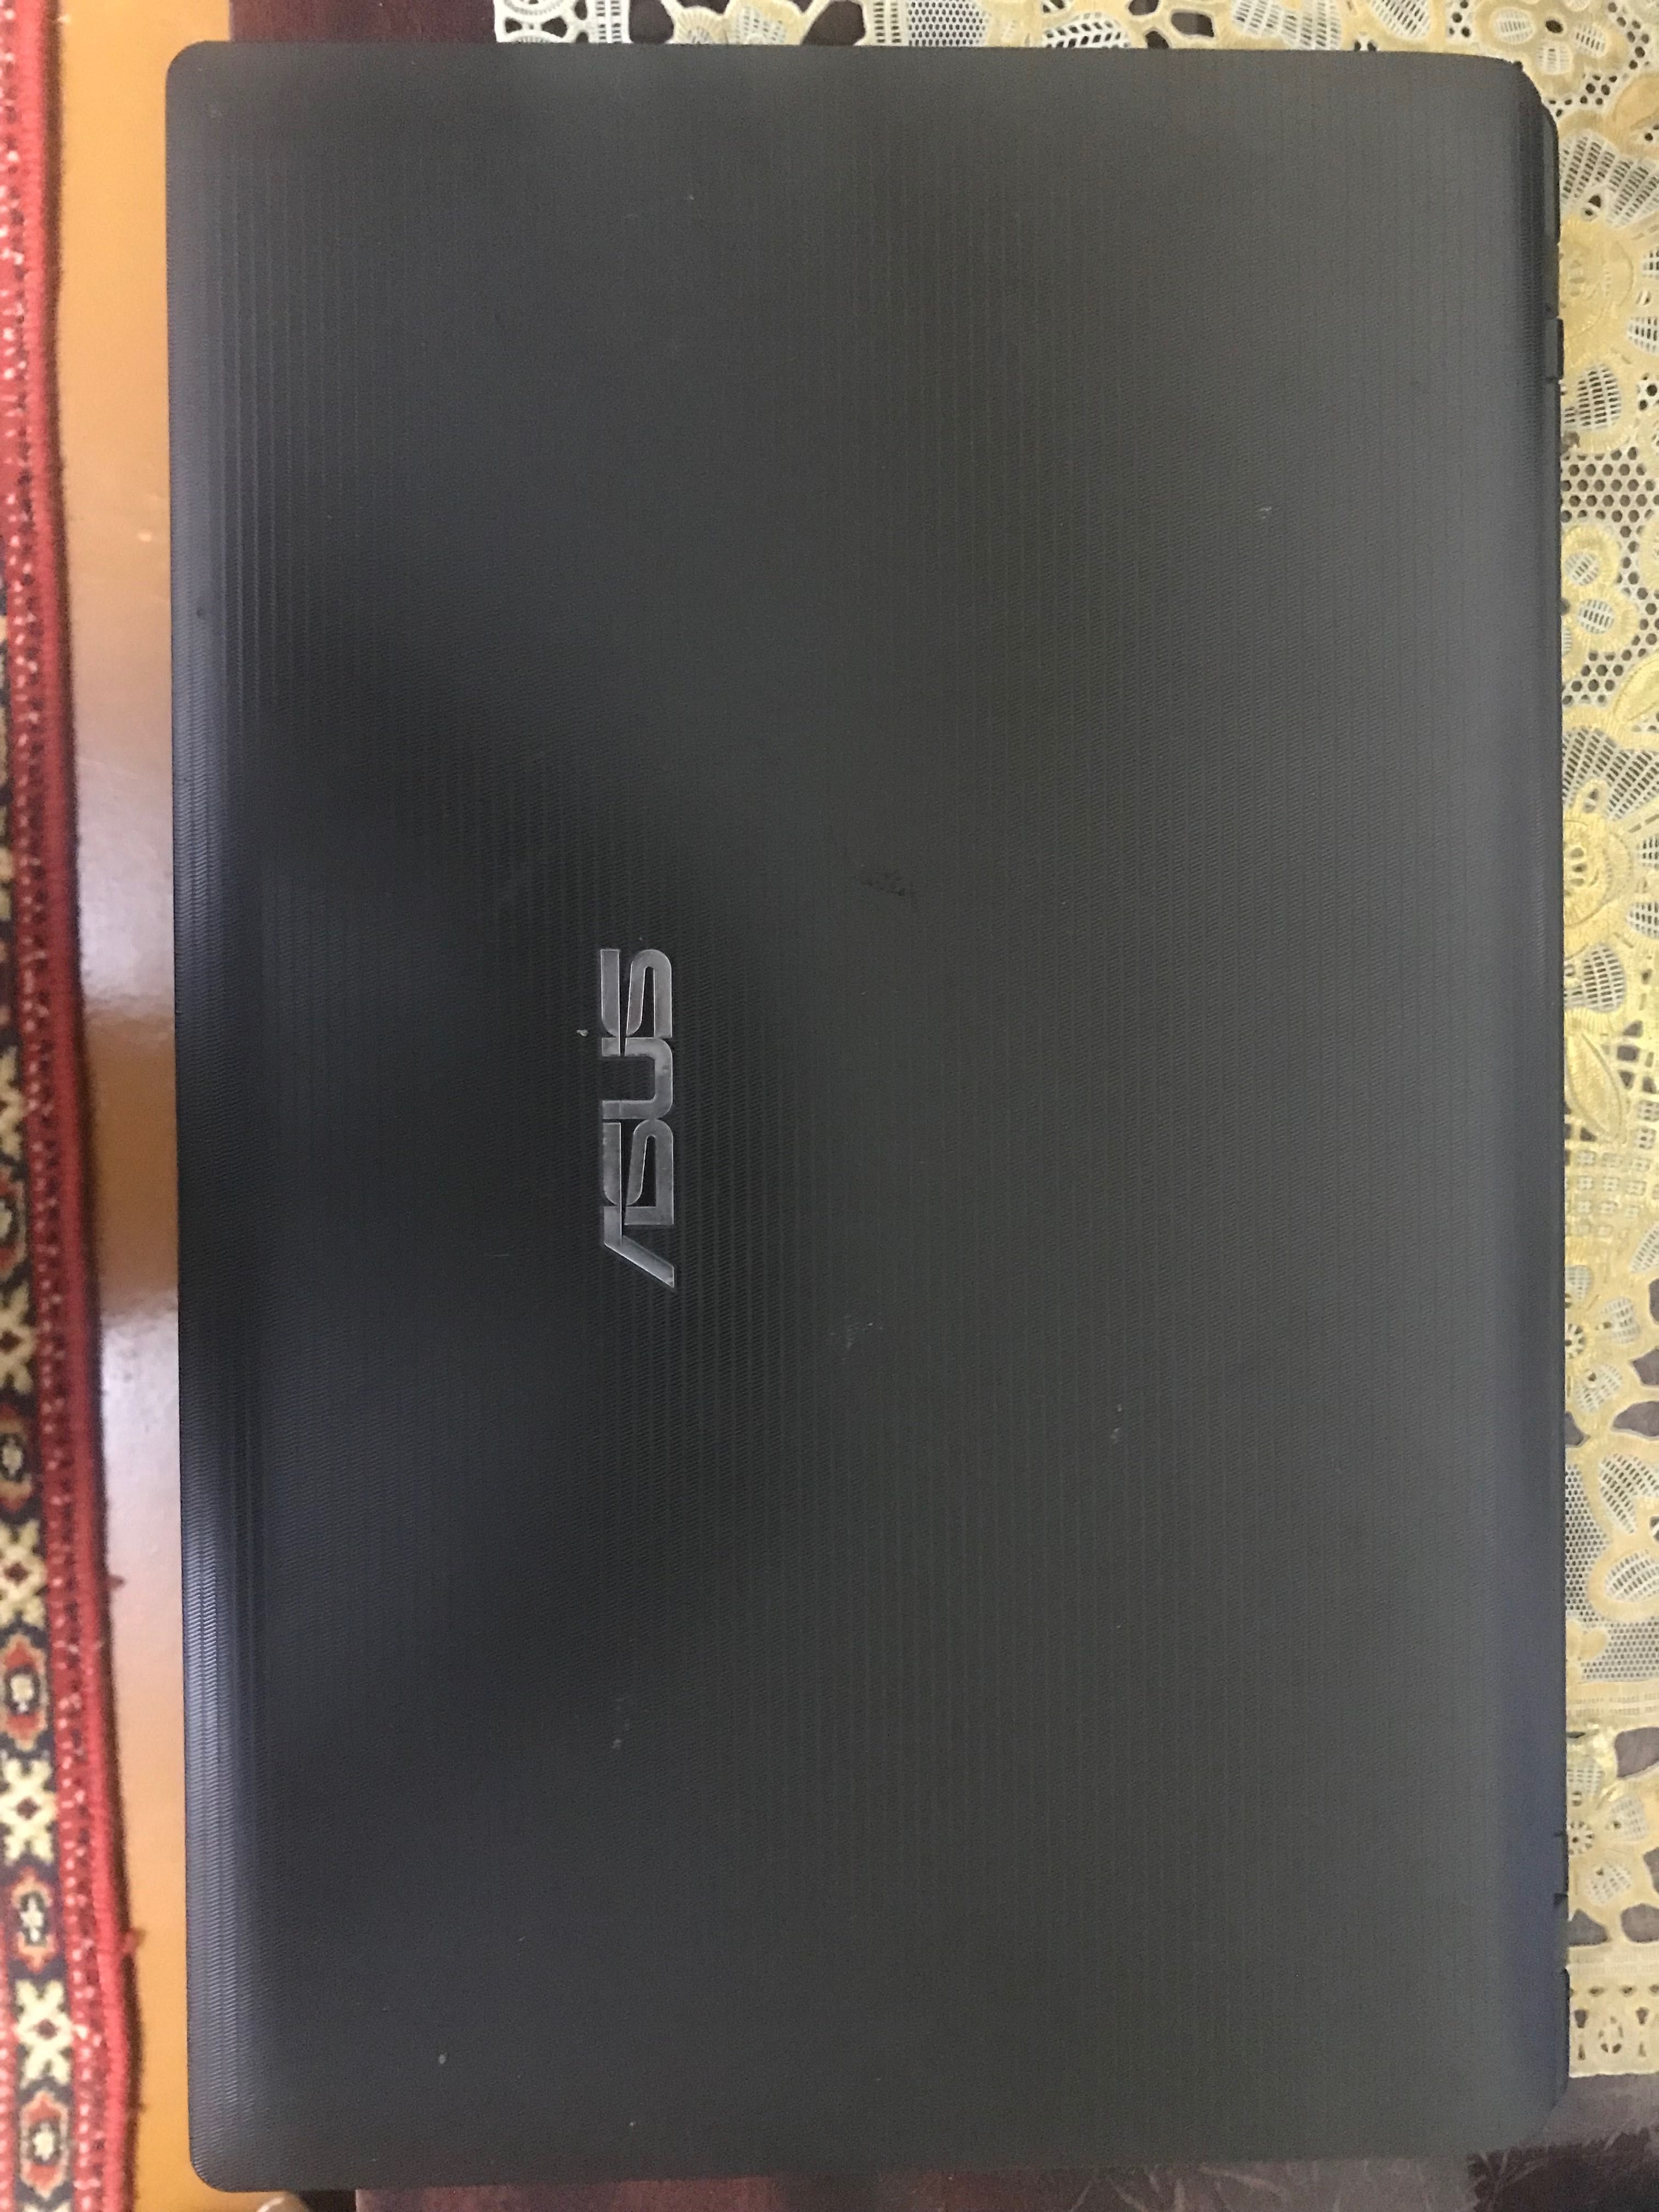 Продам ноутбук ASUS K53E